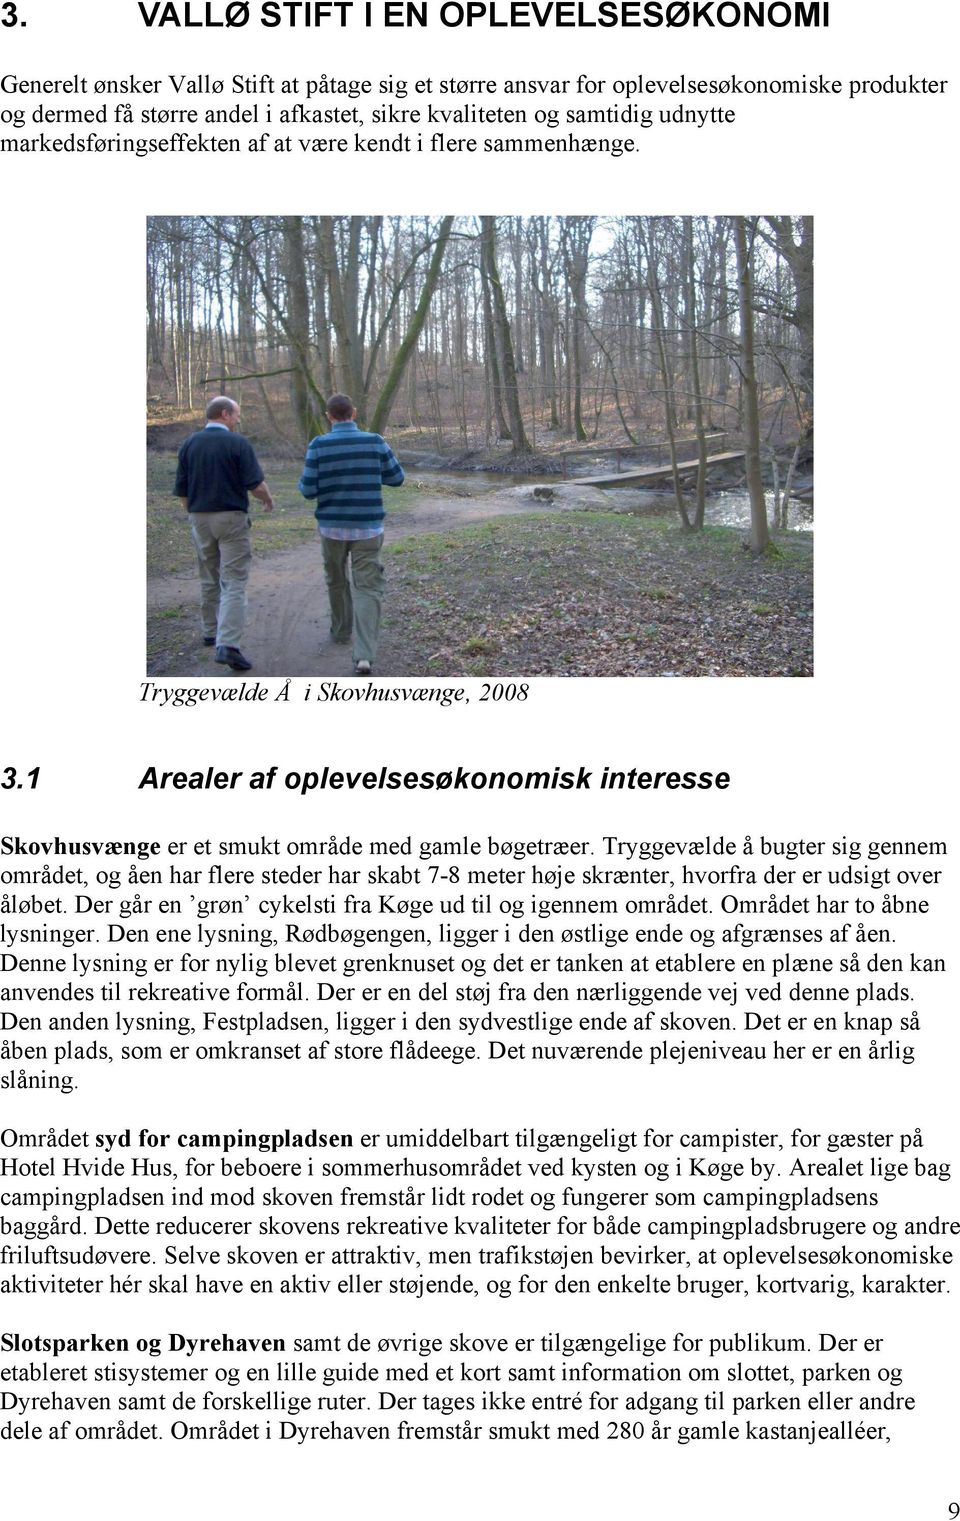 Betaling pustes op aktivering Alternative indkomster til skovbruget på Vallø Stift - PDF Free Download